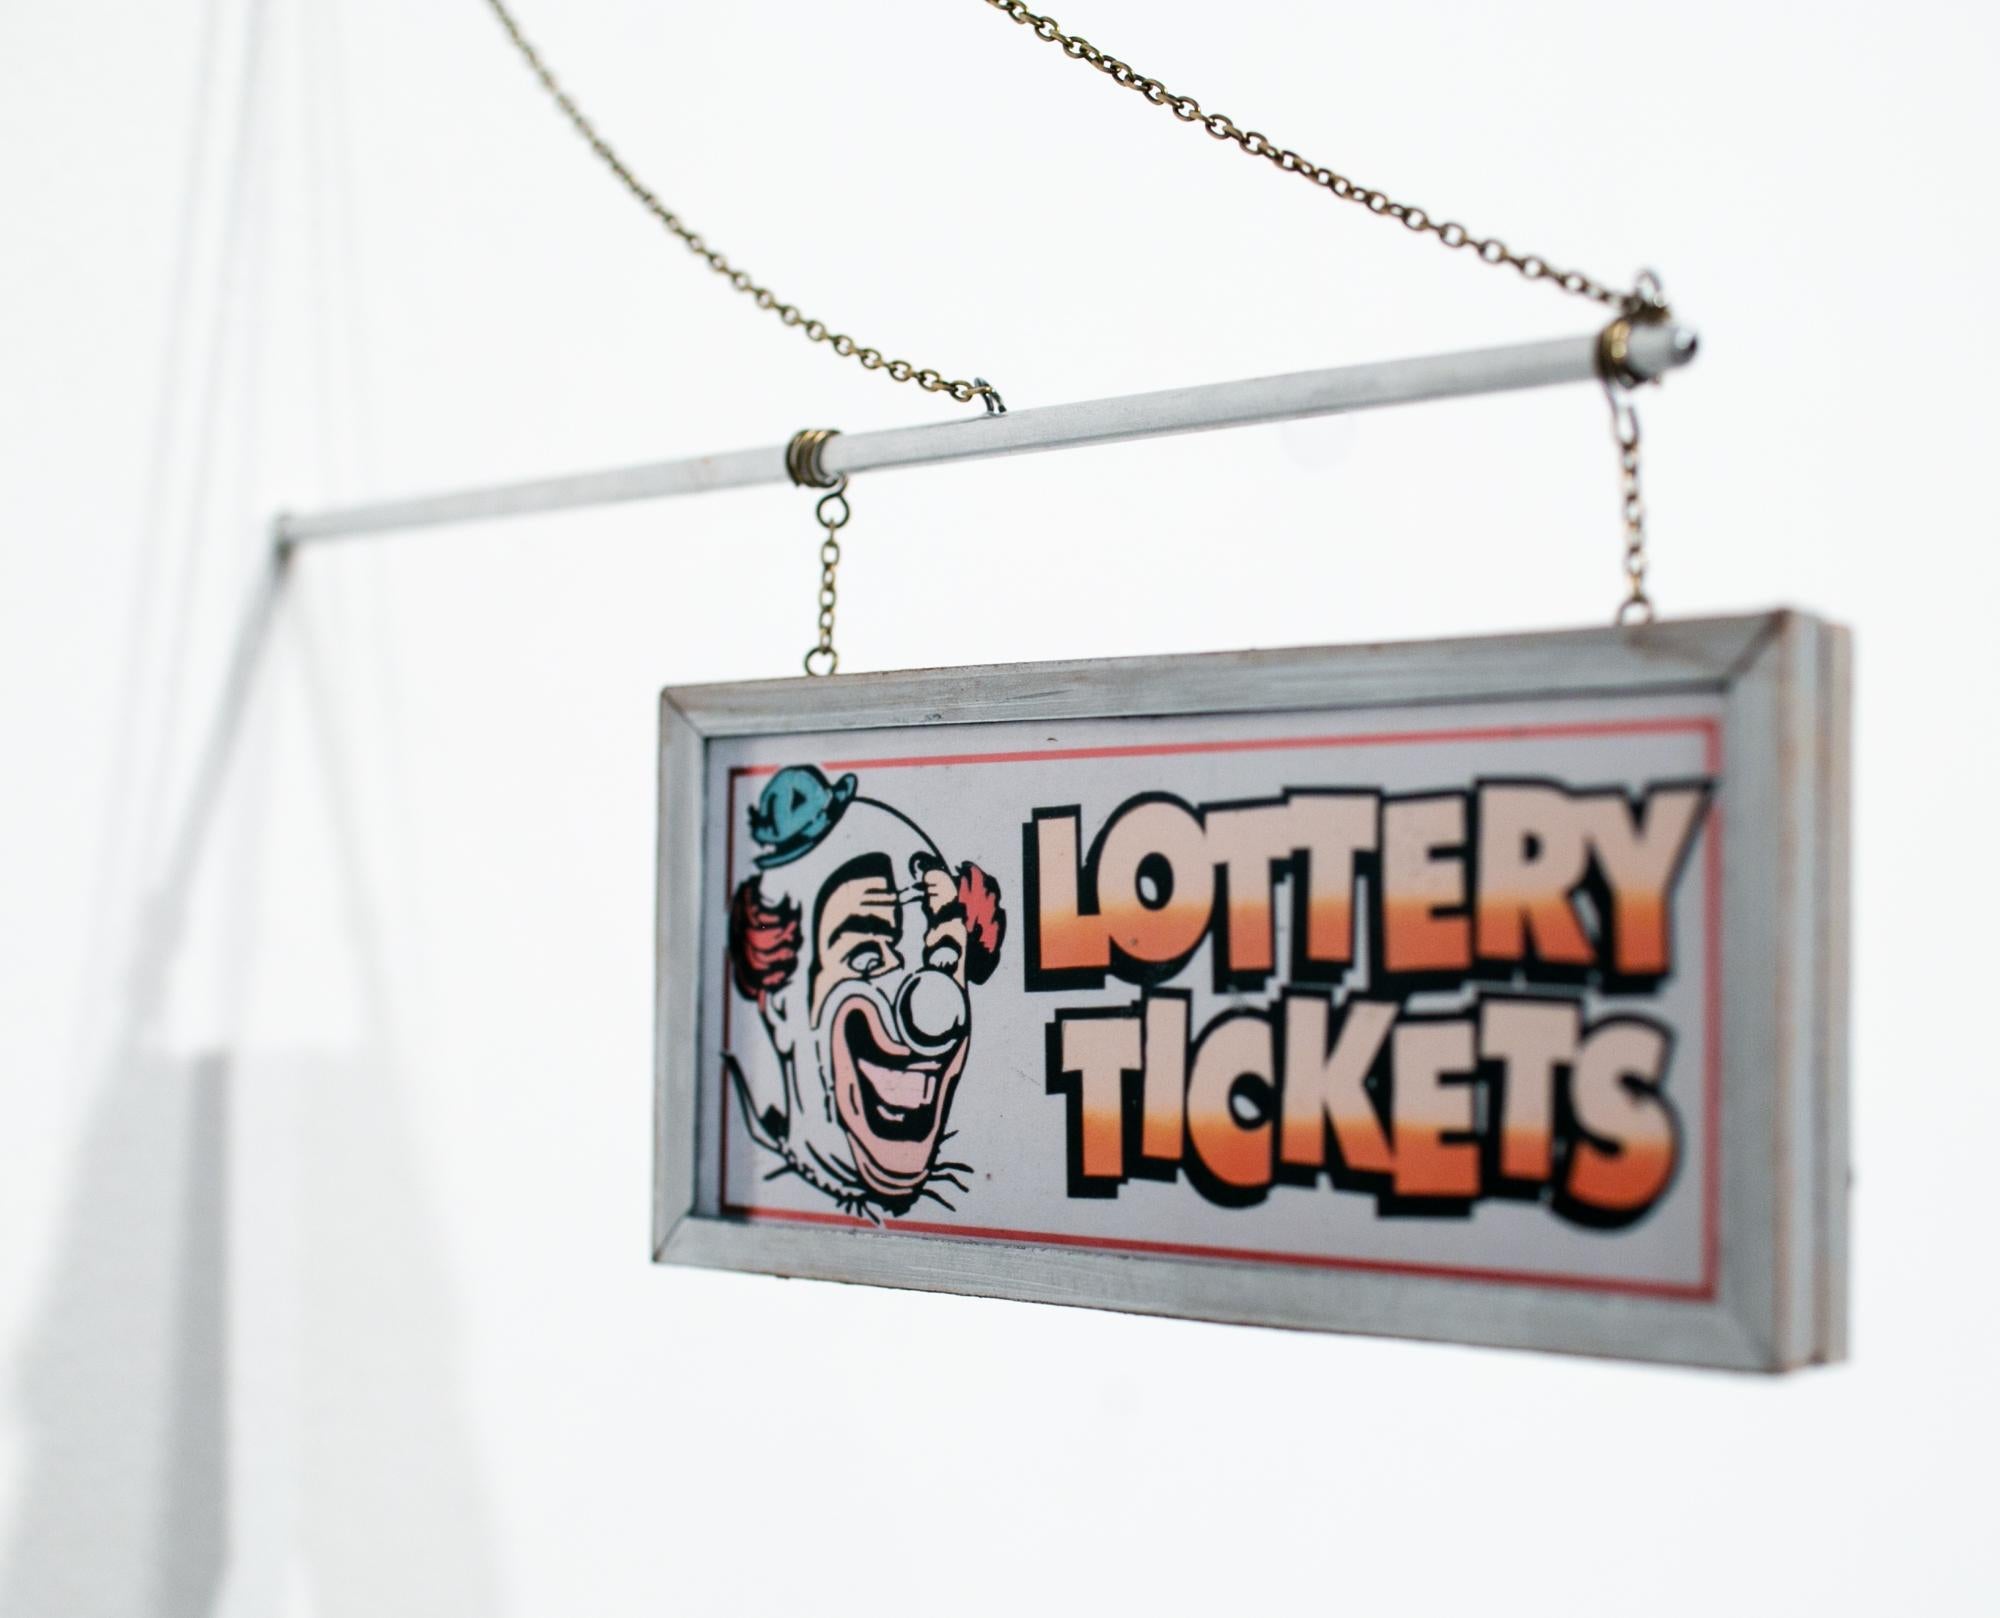 Pete's Lottery Tickets - Gray Still-Life by Drew Leshko